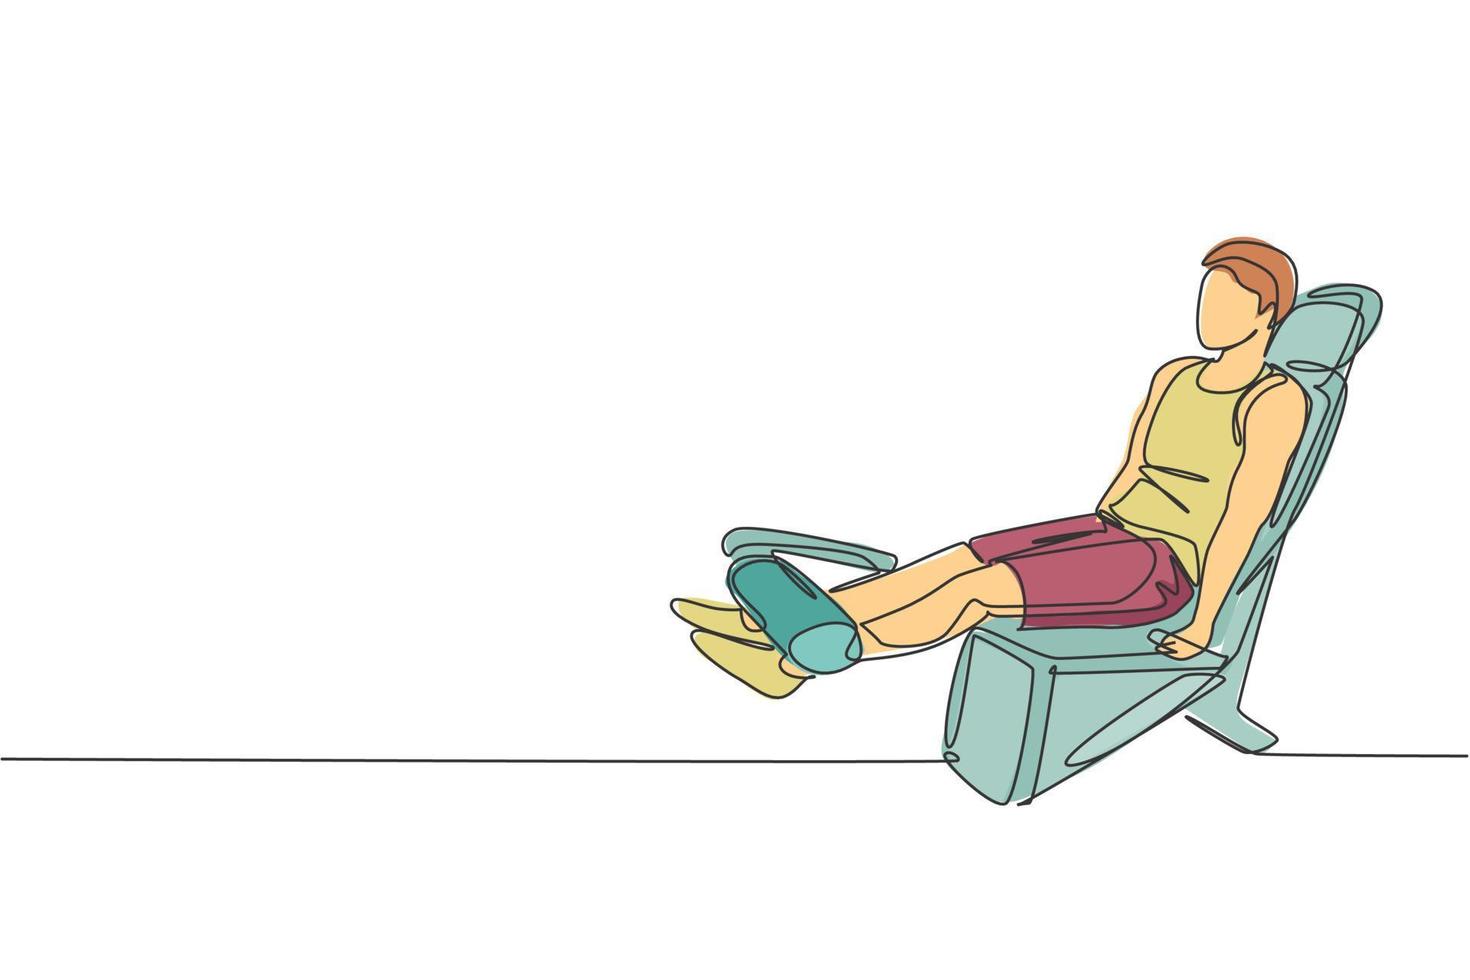 un dibujo de una sola línea del ejercicio de un joven enérgico con press de banca en el gimnasio ilustración gráfica vectorial del centro de fitness. concepto de deporte de estilo de vida saludable. diseño moderno de dibujo de línea continua vector